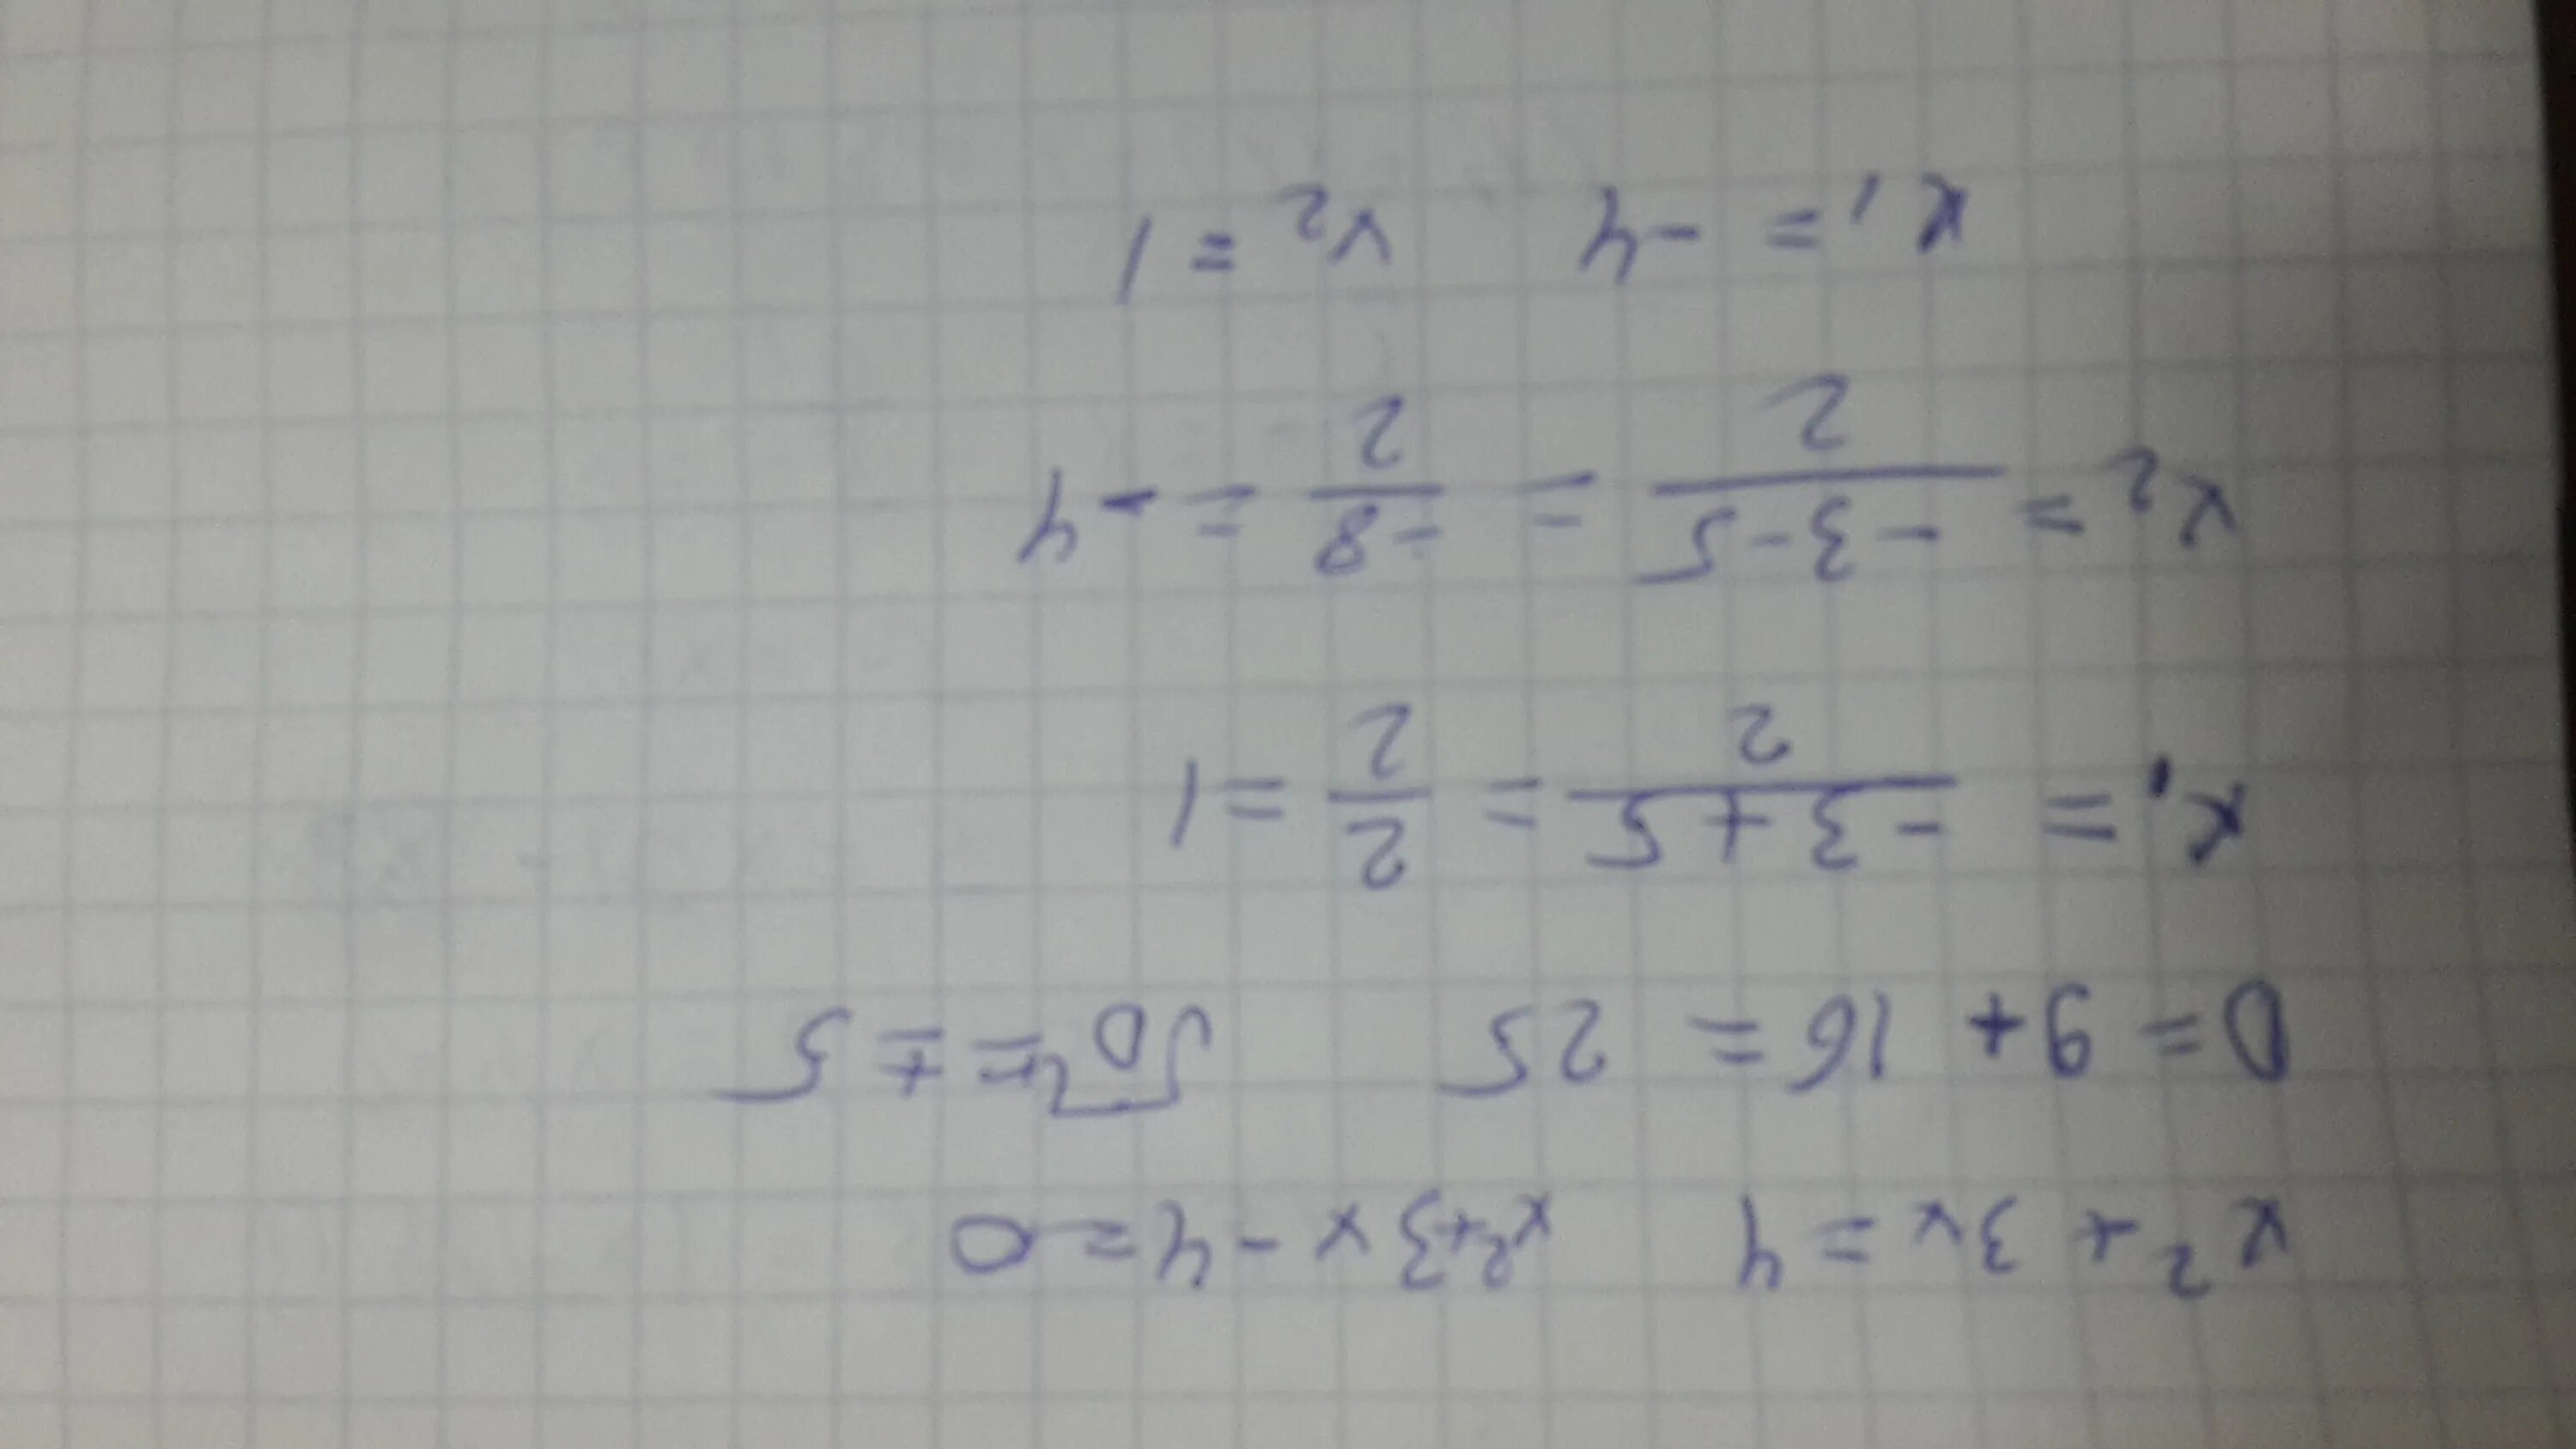 Корни в порядке возрастания x1=. Решение уравнения (8x+x)*4=592. Решите уравнения и запишите корни в порядке возрастания.